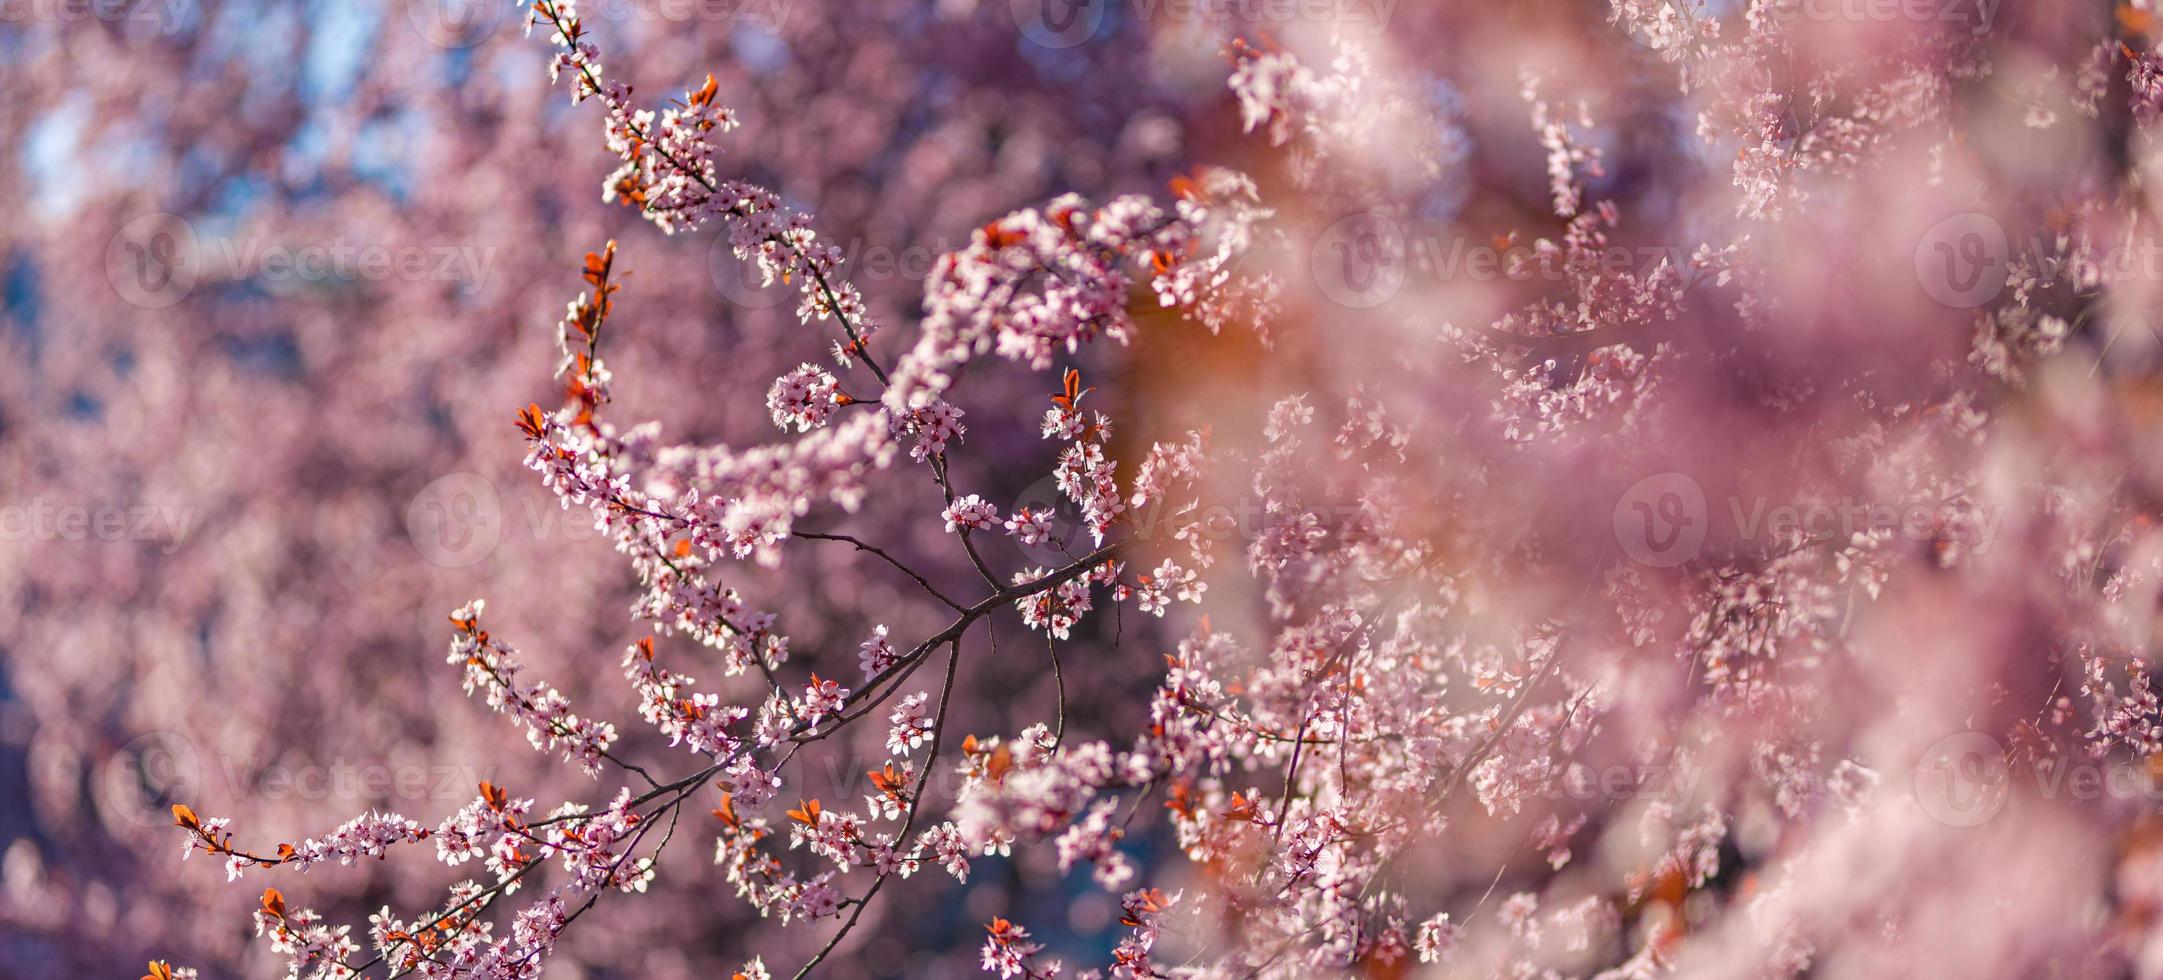 fundos de flores rosa de primavera. sonho natureza closeup com sakura, flor de cerejeira na paisagem de primavera turva bokeh. cores pastel pacíficas, flores desabrochando românticas foto